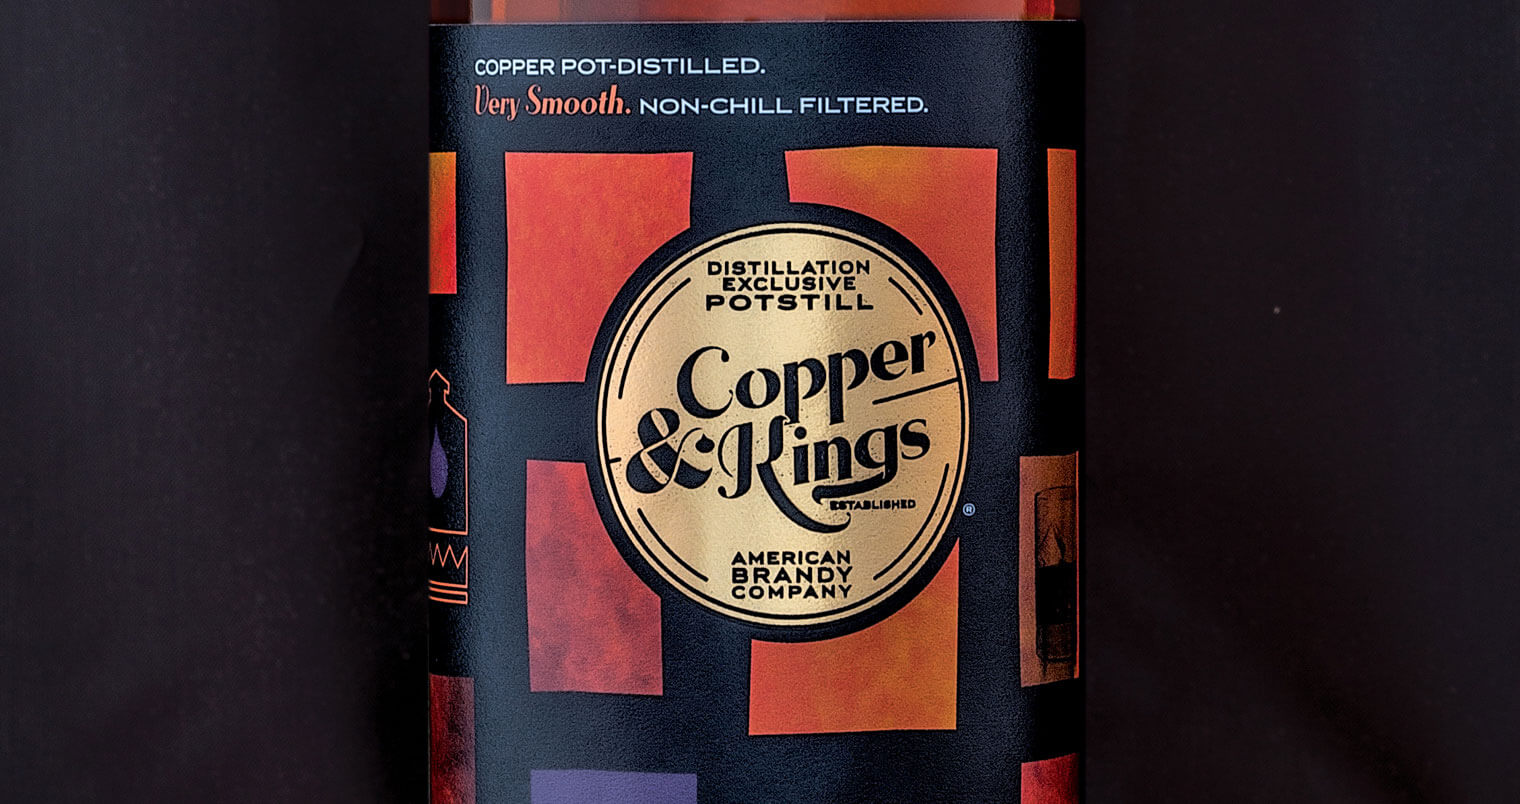 Meet Joe Heron, Founder of Copper & Kings American Brandy, featured image